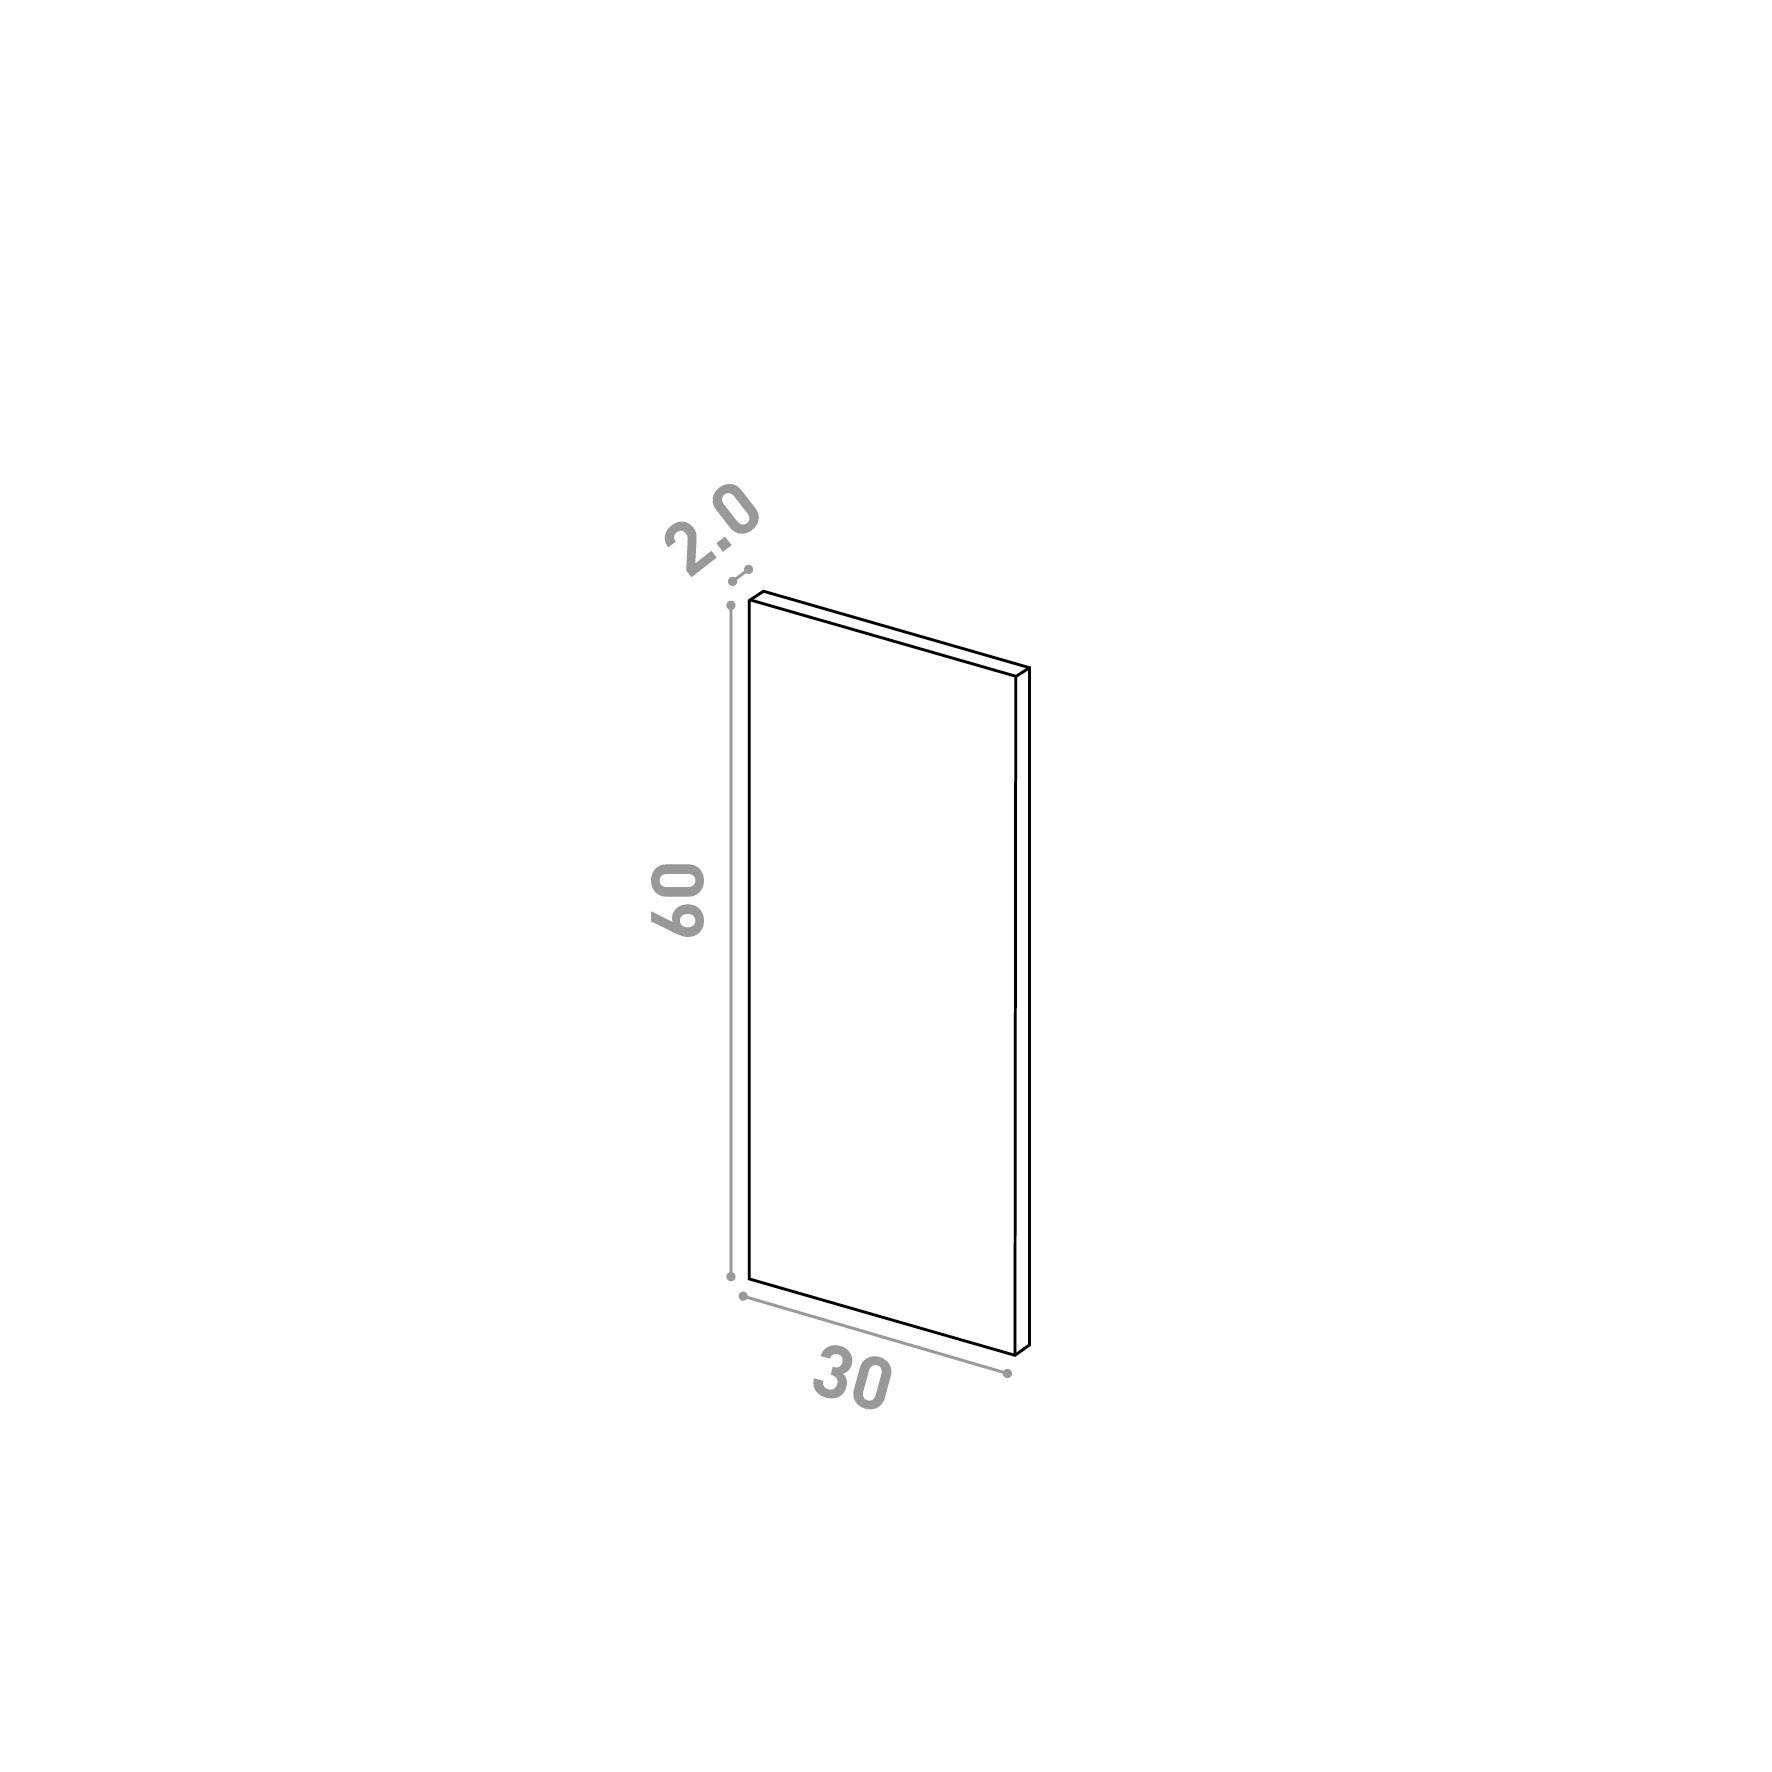 Door 30x60cm | Straight design | Matte lacquered